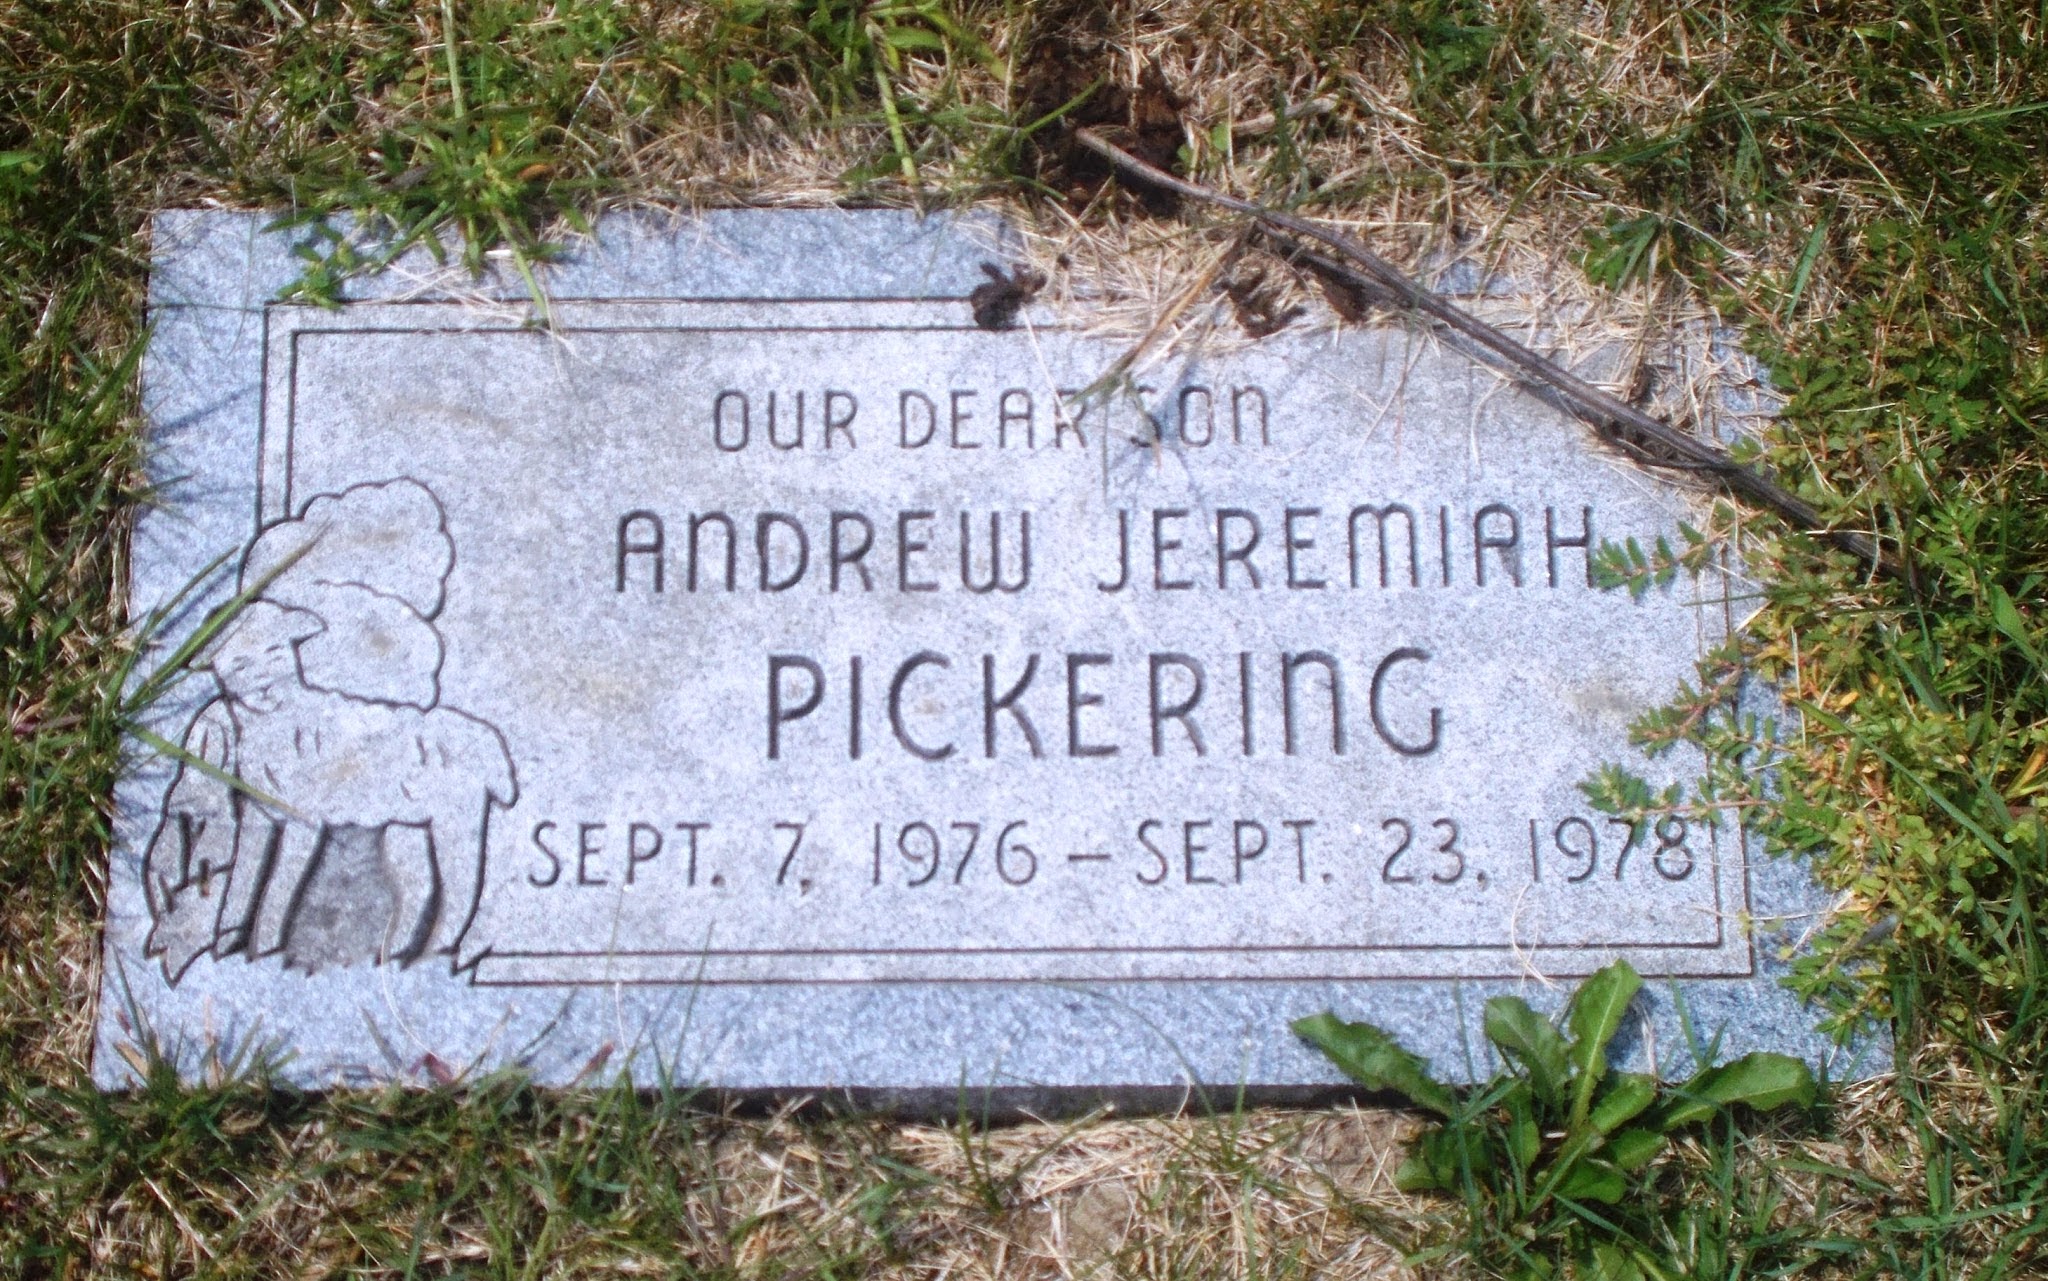 Andrew Jeremiah Pickering